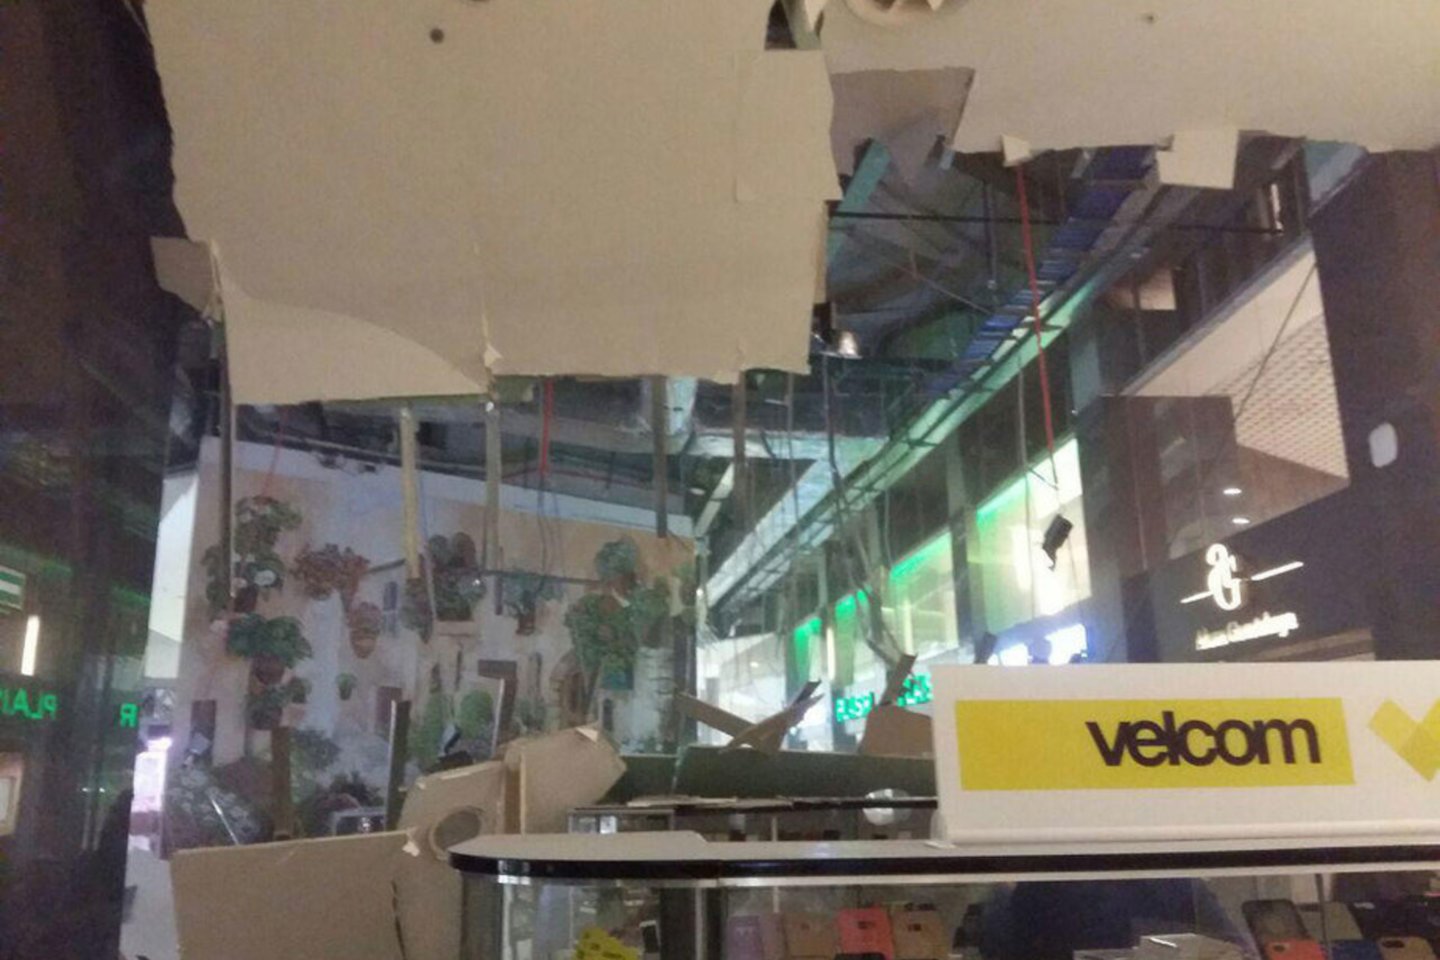  Minsko prekybos centre „Arena City“ įgriuvo lubos. Apie tai praneša Baltarusijos žiniasklaida.<br> nn.by nuotr